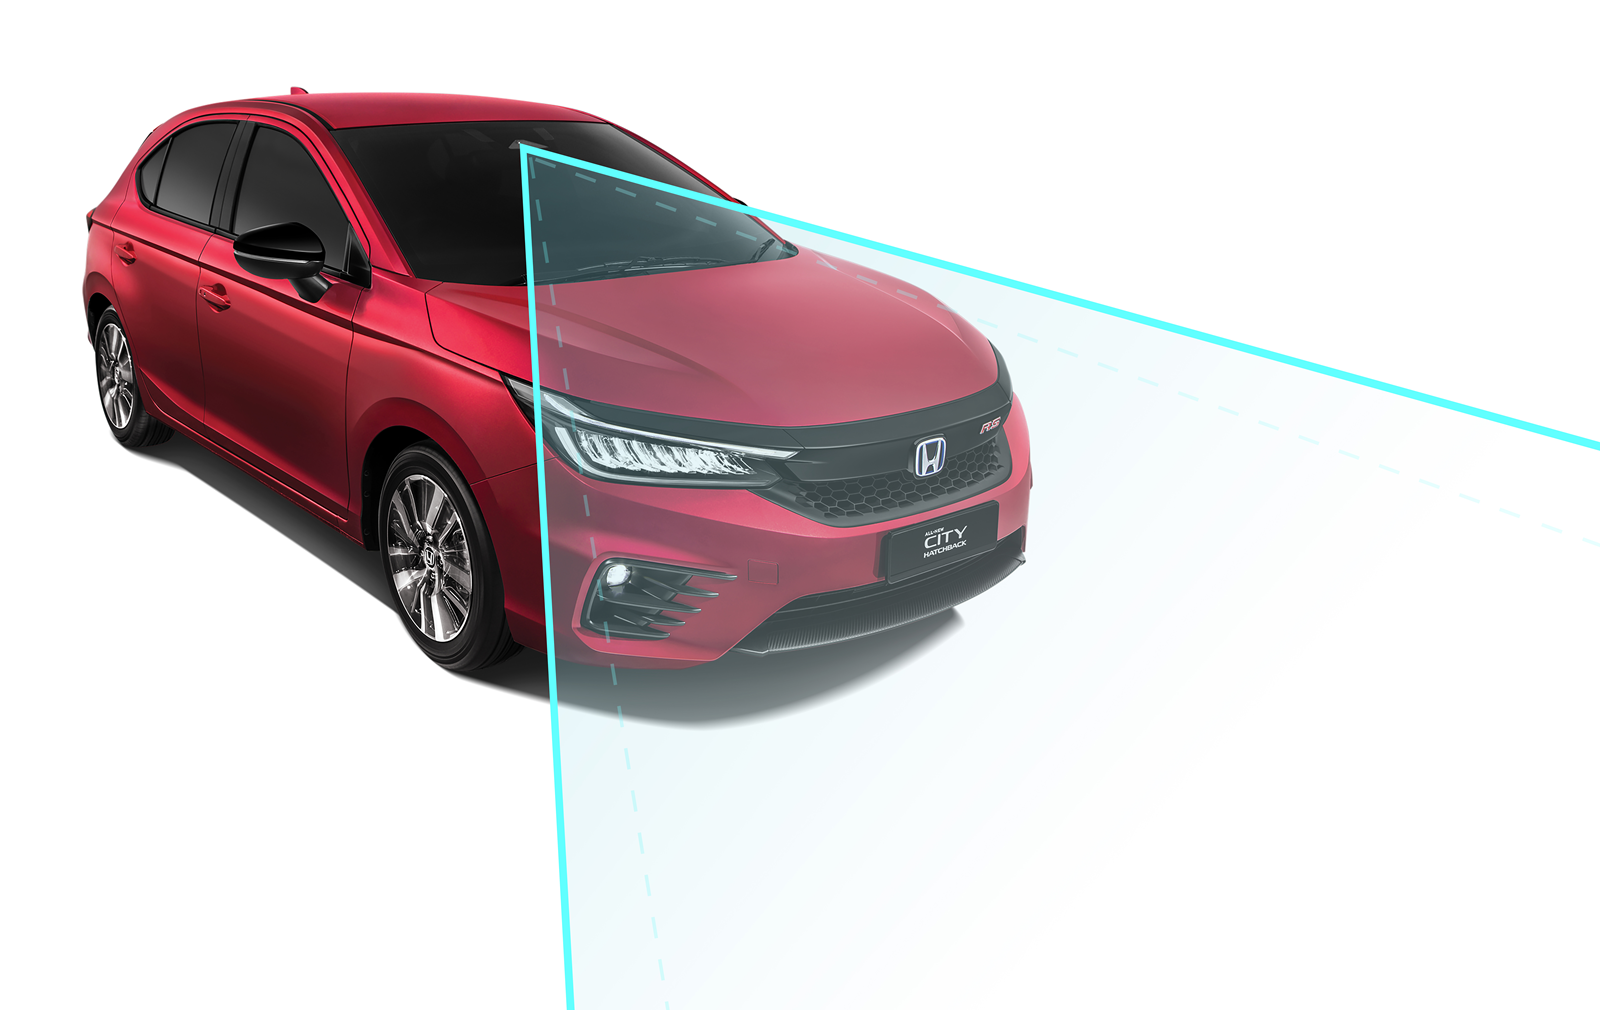 RS e:HEV版中配备了Honda SENSING安全功能，其安全系统套件包括主动式车距调节定速巡航系统、碰撞缓解煞车系统、前方碰撞警示系统、车道维持辅助系统、道路偏移抑制系统 、车道偏移警示系统和远光灯自动切换系统 。